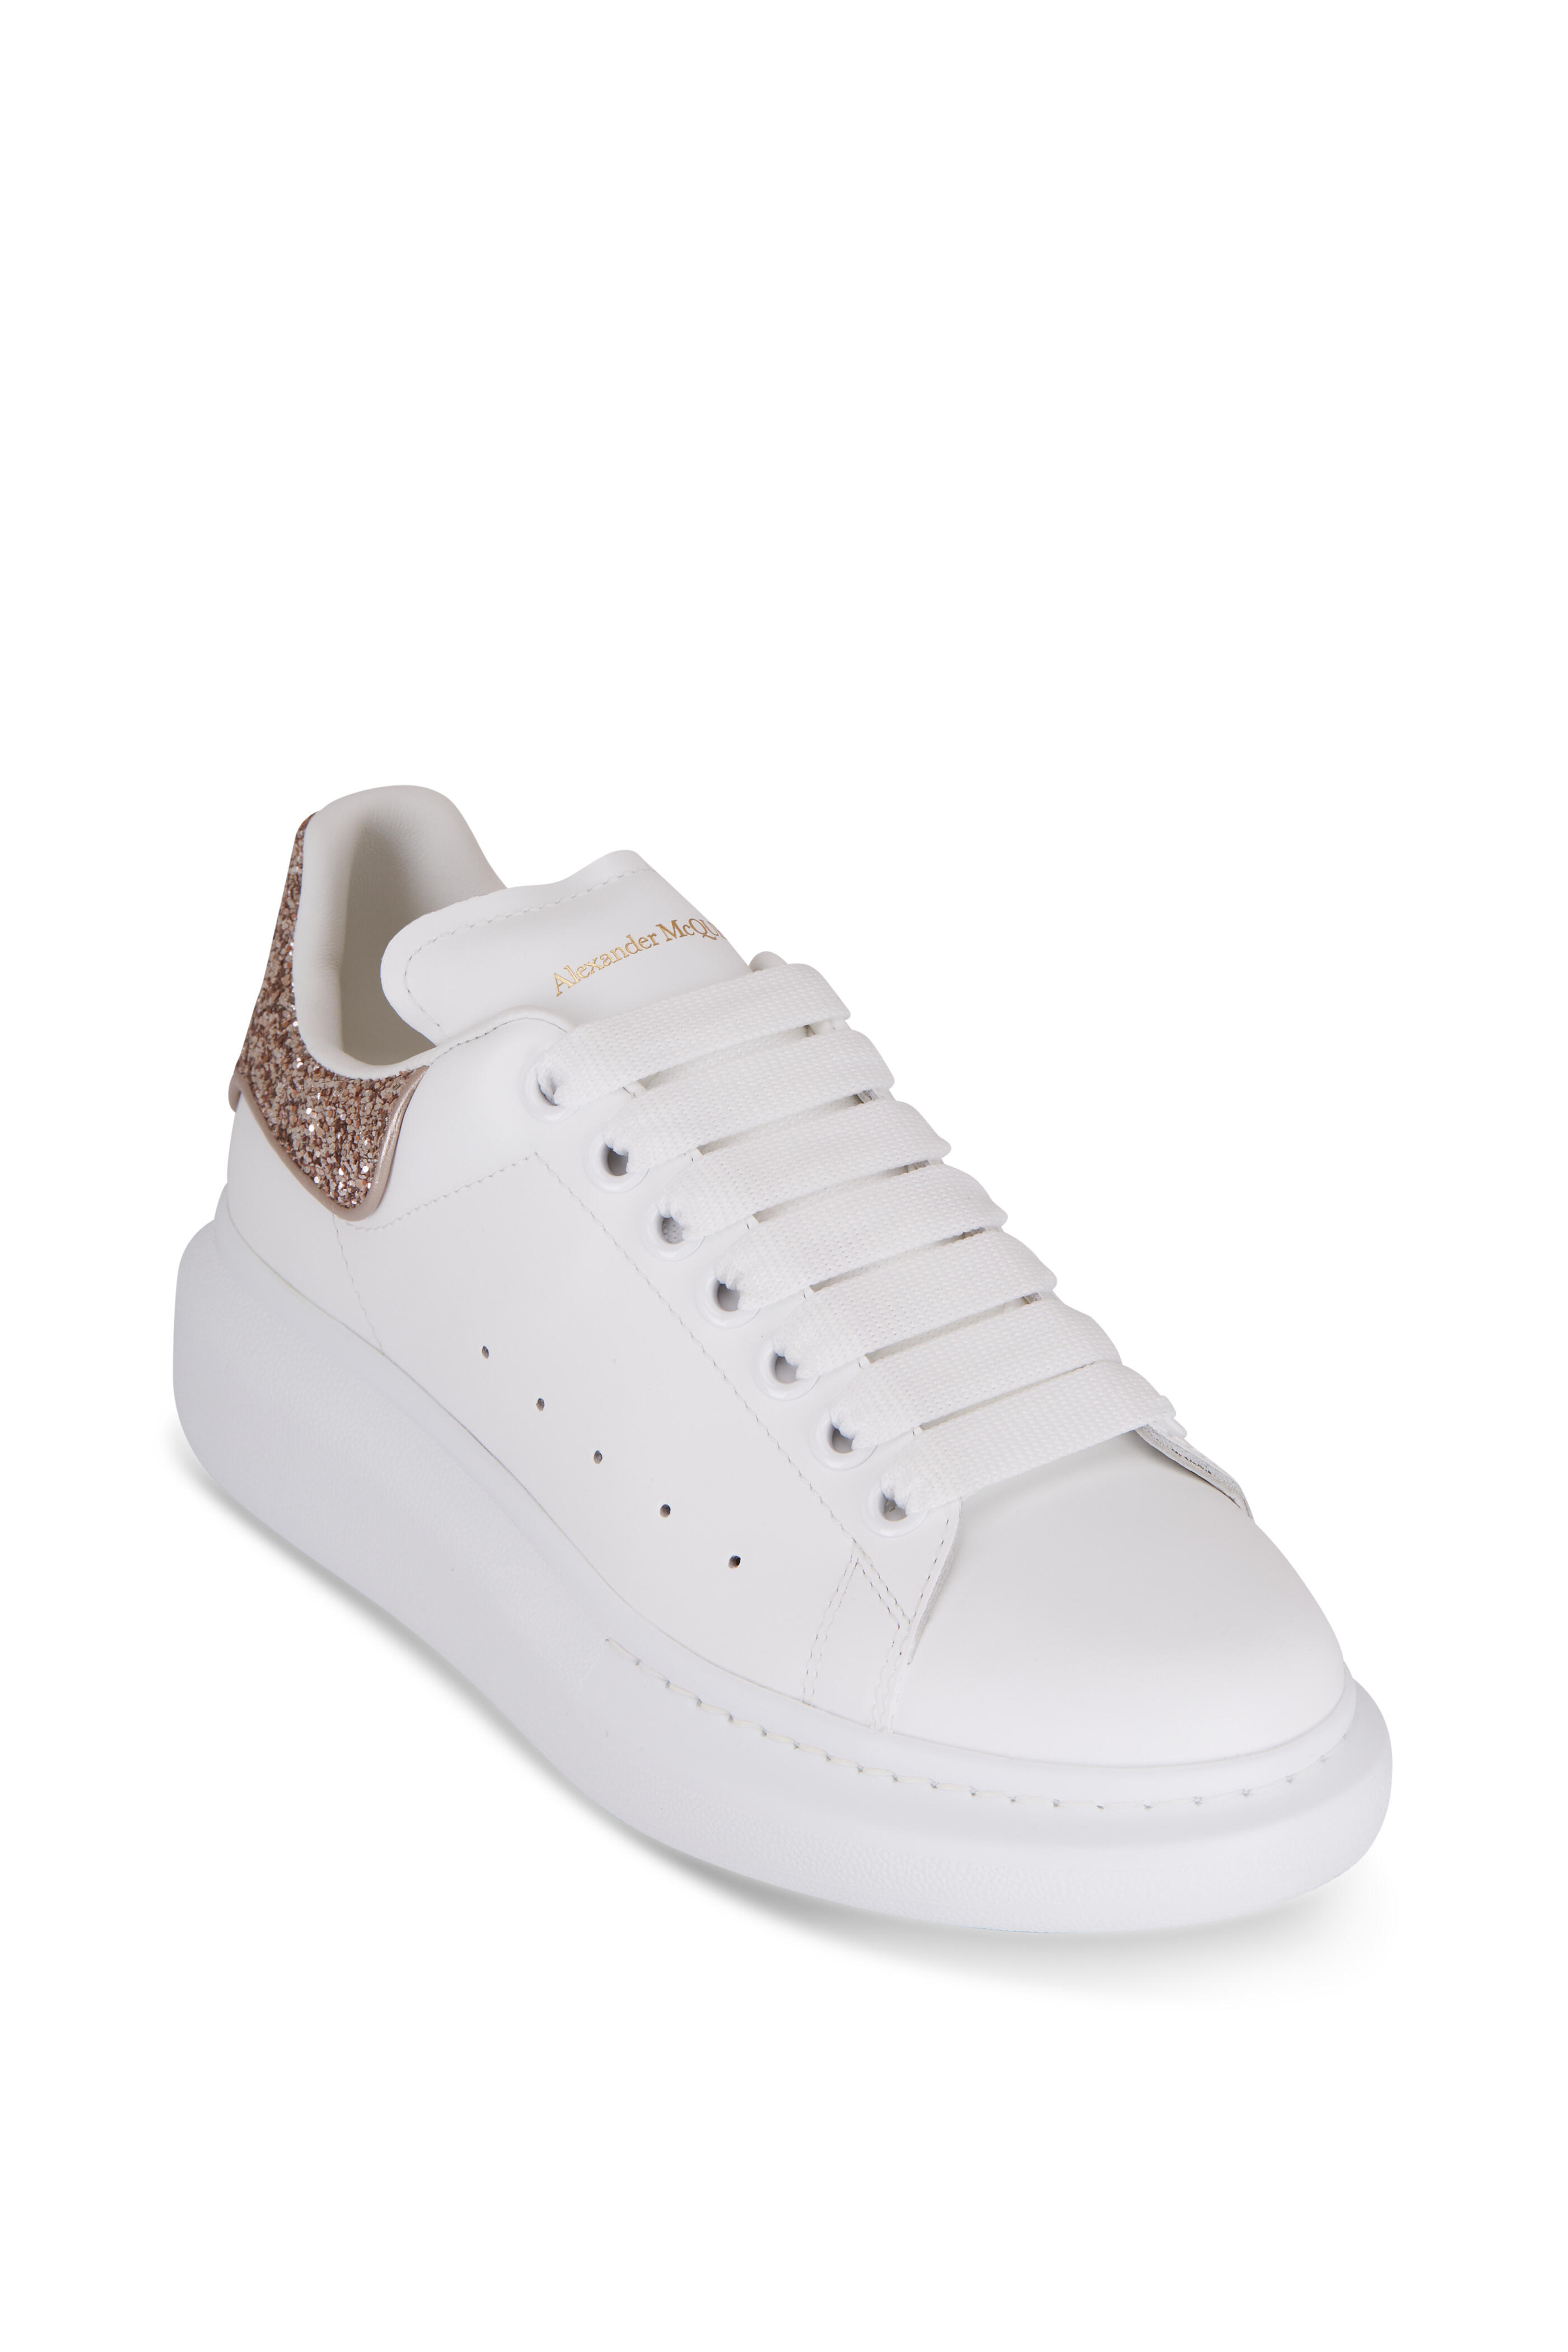 Alexander McQueen - White & Calico Glitter Sole Sneaker